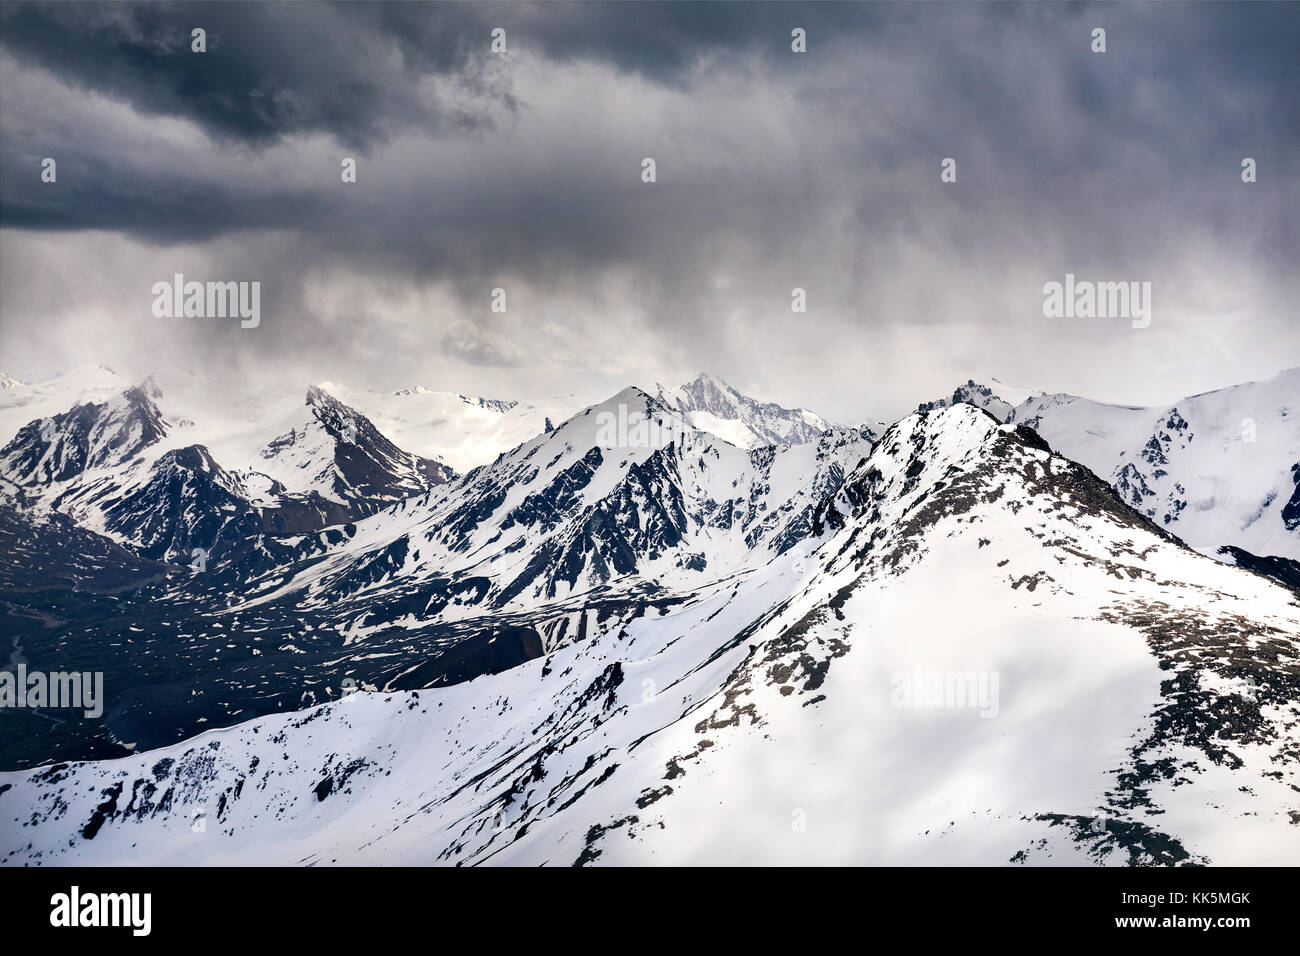 Paysage de montagnes enneigées avec fond de ciel orageux couvert Banque D'Images